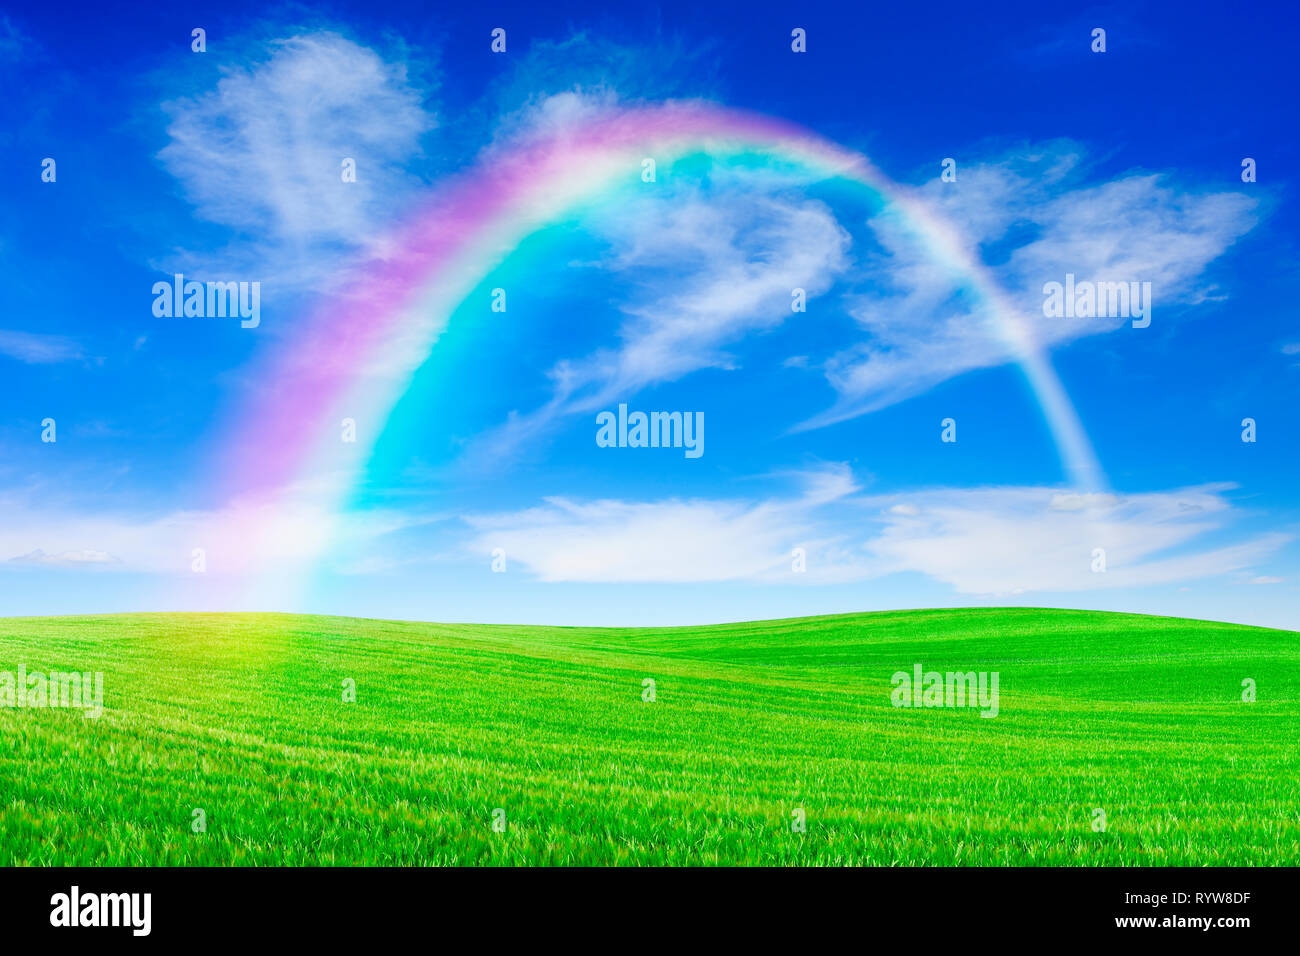 Paesaggio idilliaco, rainbow su dolci prati verdi e sullo sfondo il cielo blu e nuvole bianche Foto Stock